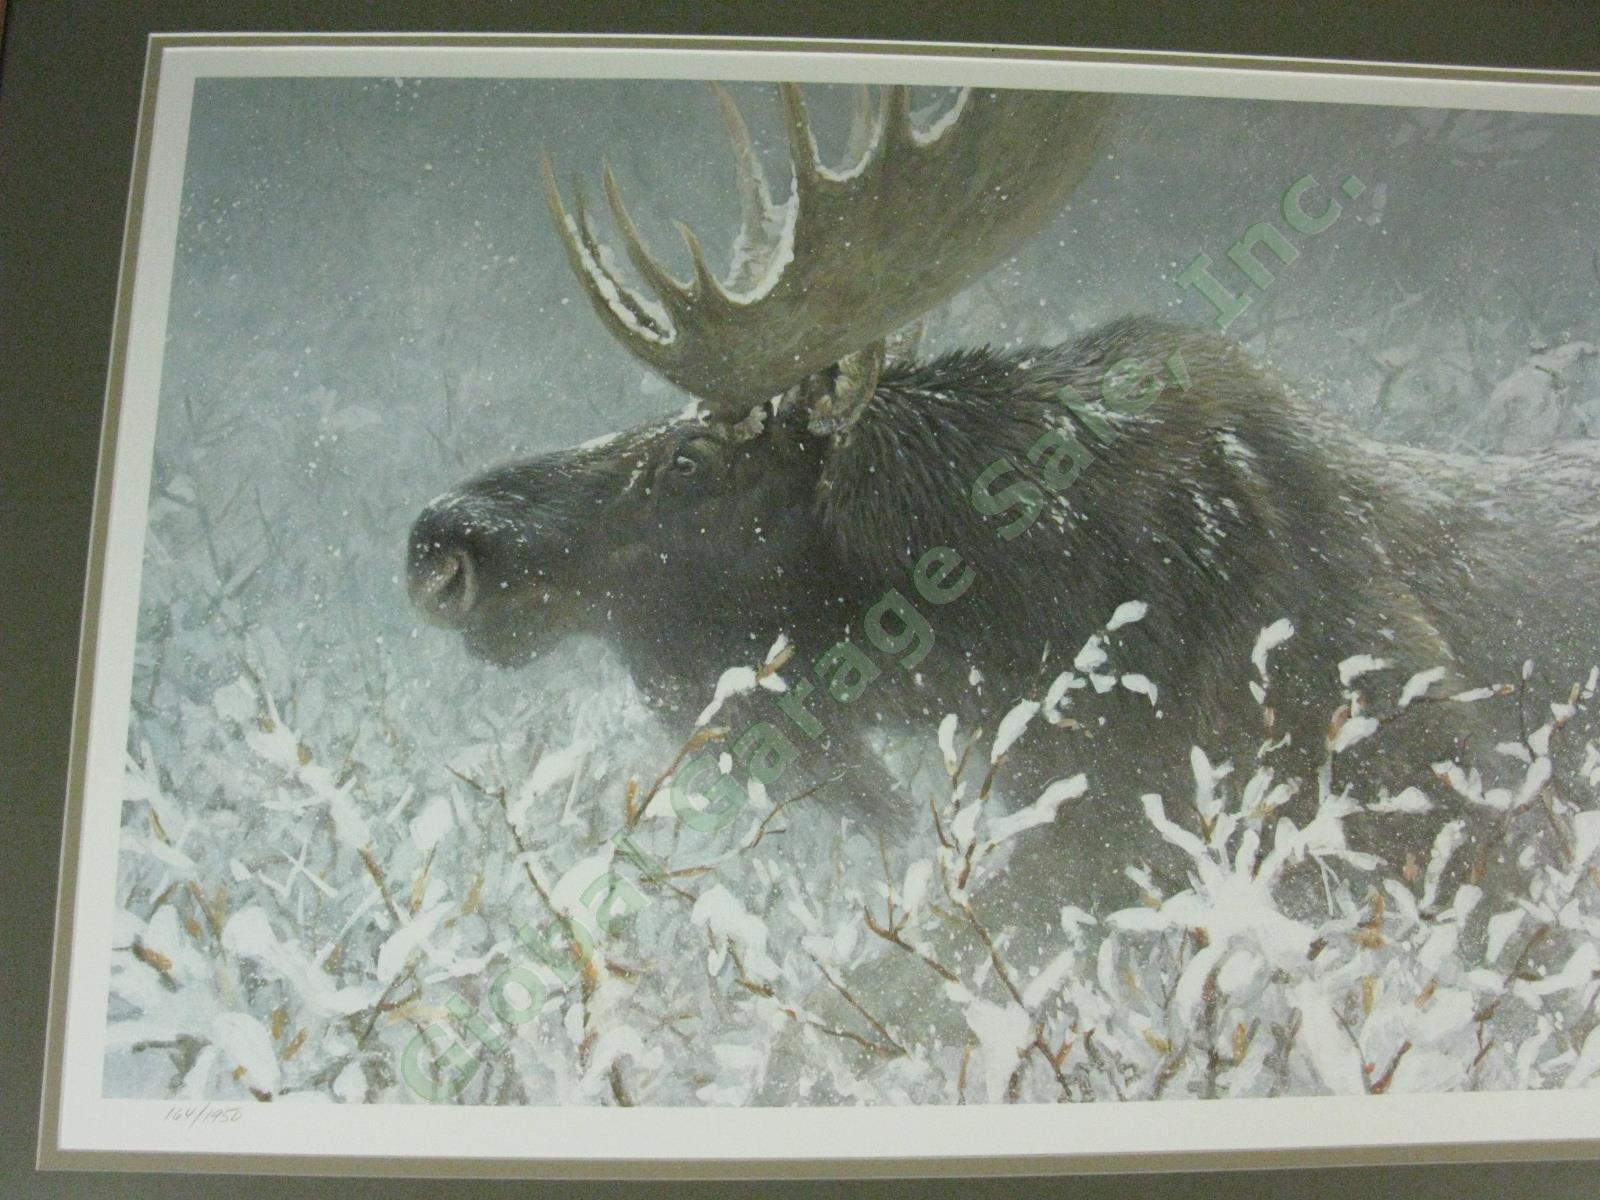 Robert Bateman 1994 Signed Print Winter Run Bull Moose Ltd Ed #164/1950 16"x32" 1